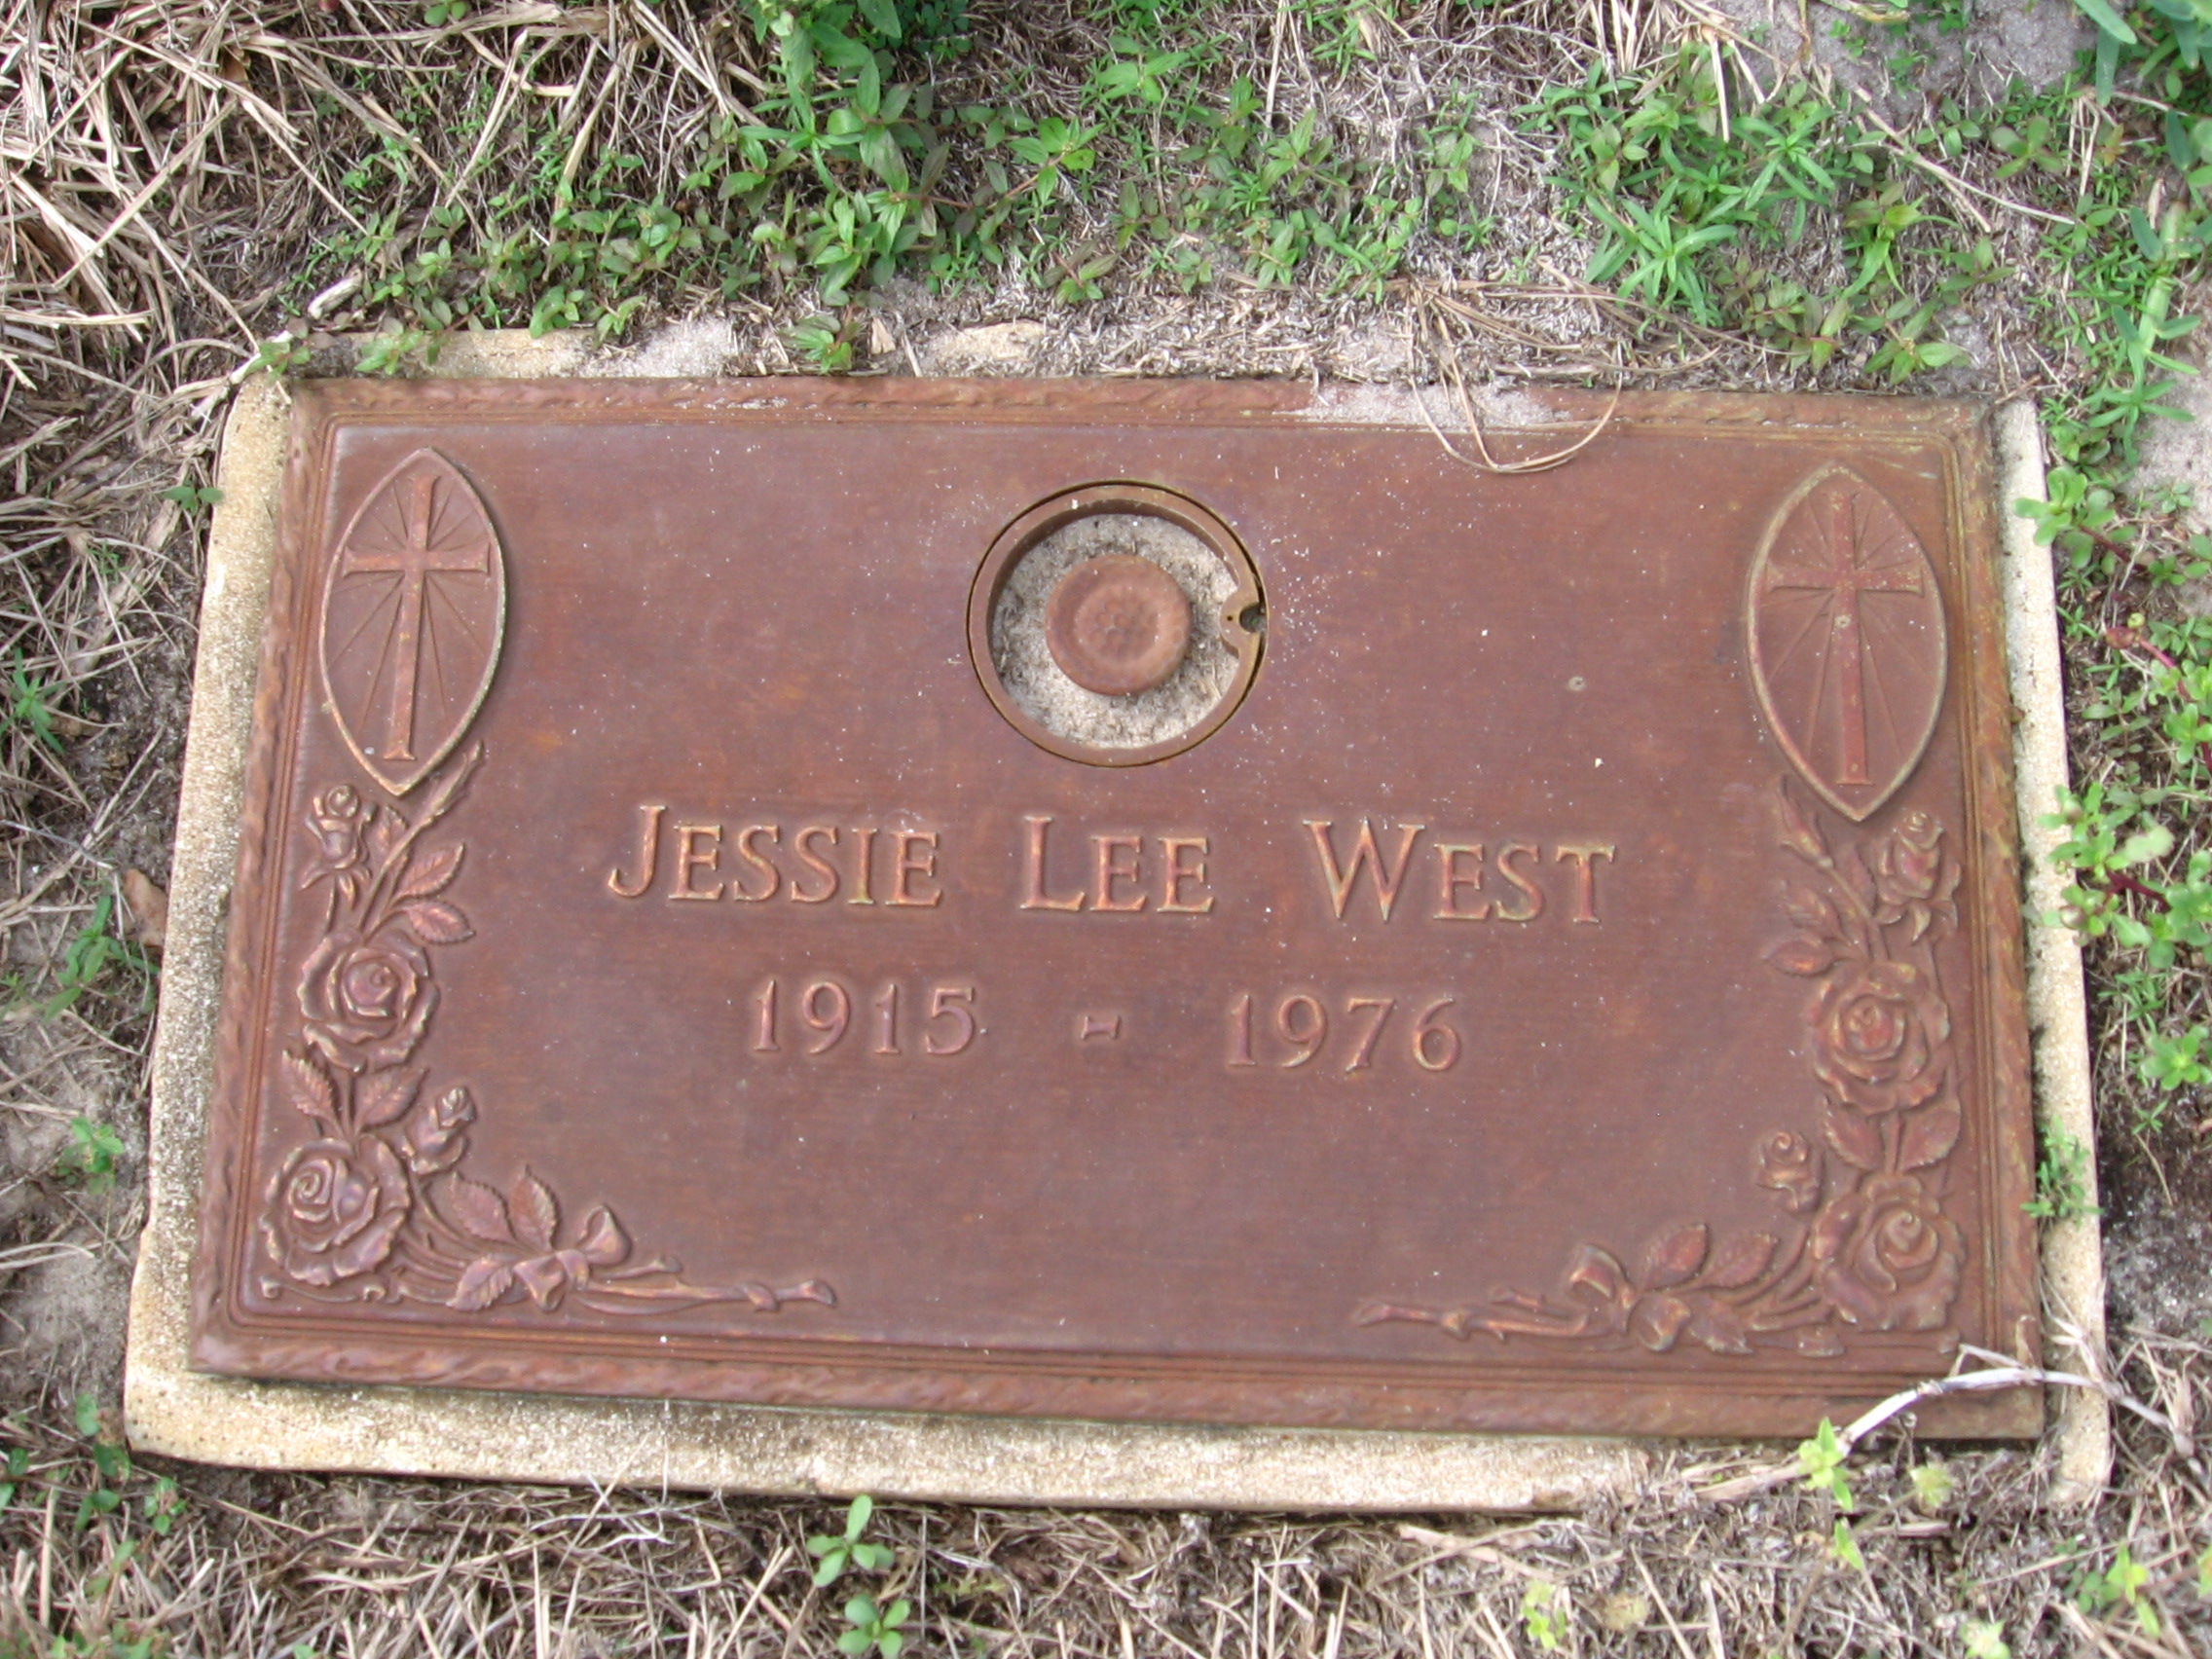 Jessie Lee West